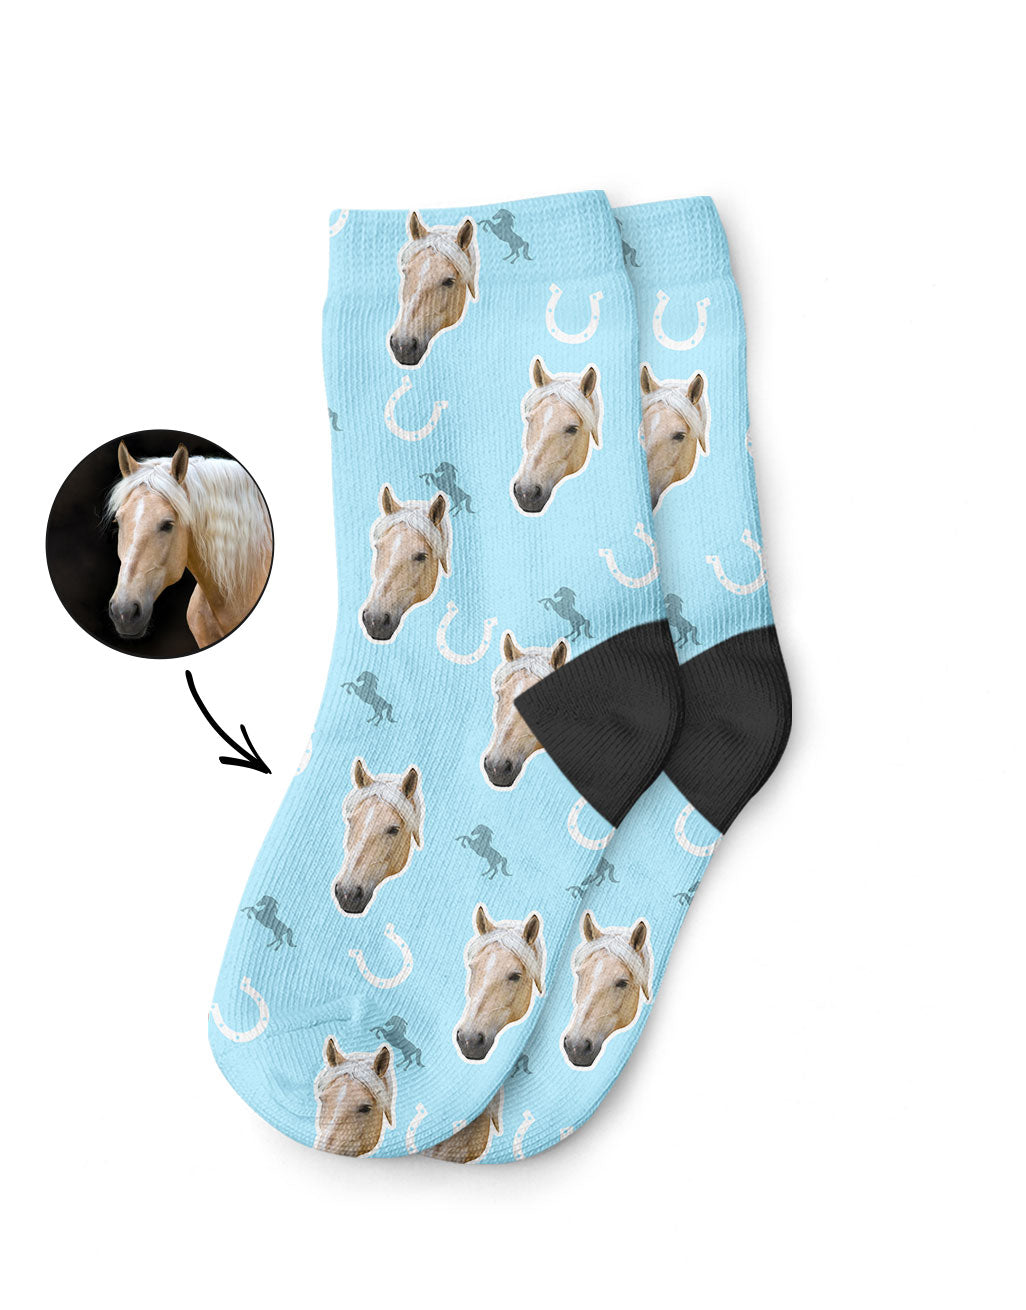 Your Horse on Kids Socks